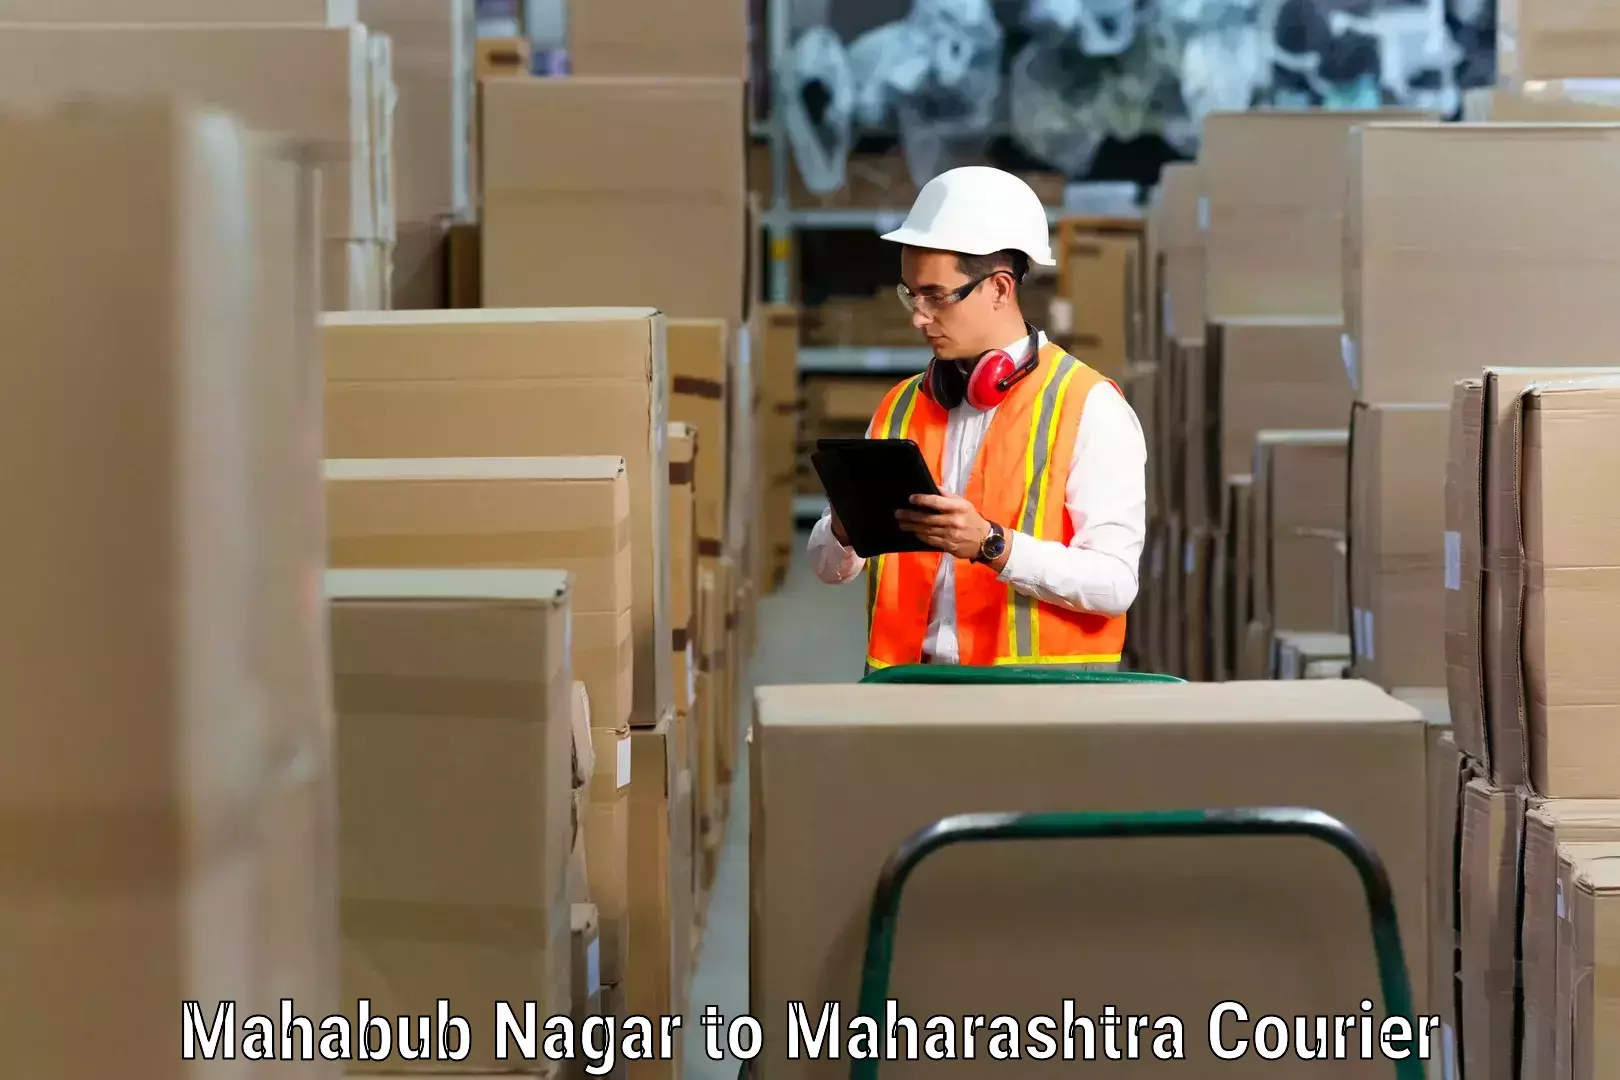 Moving and packing experts Mahabub Nagar to Nilanga